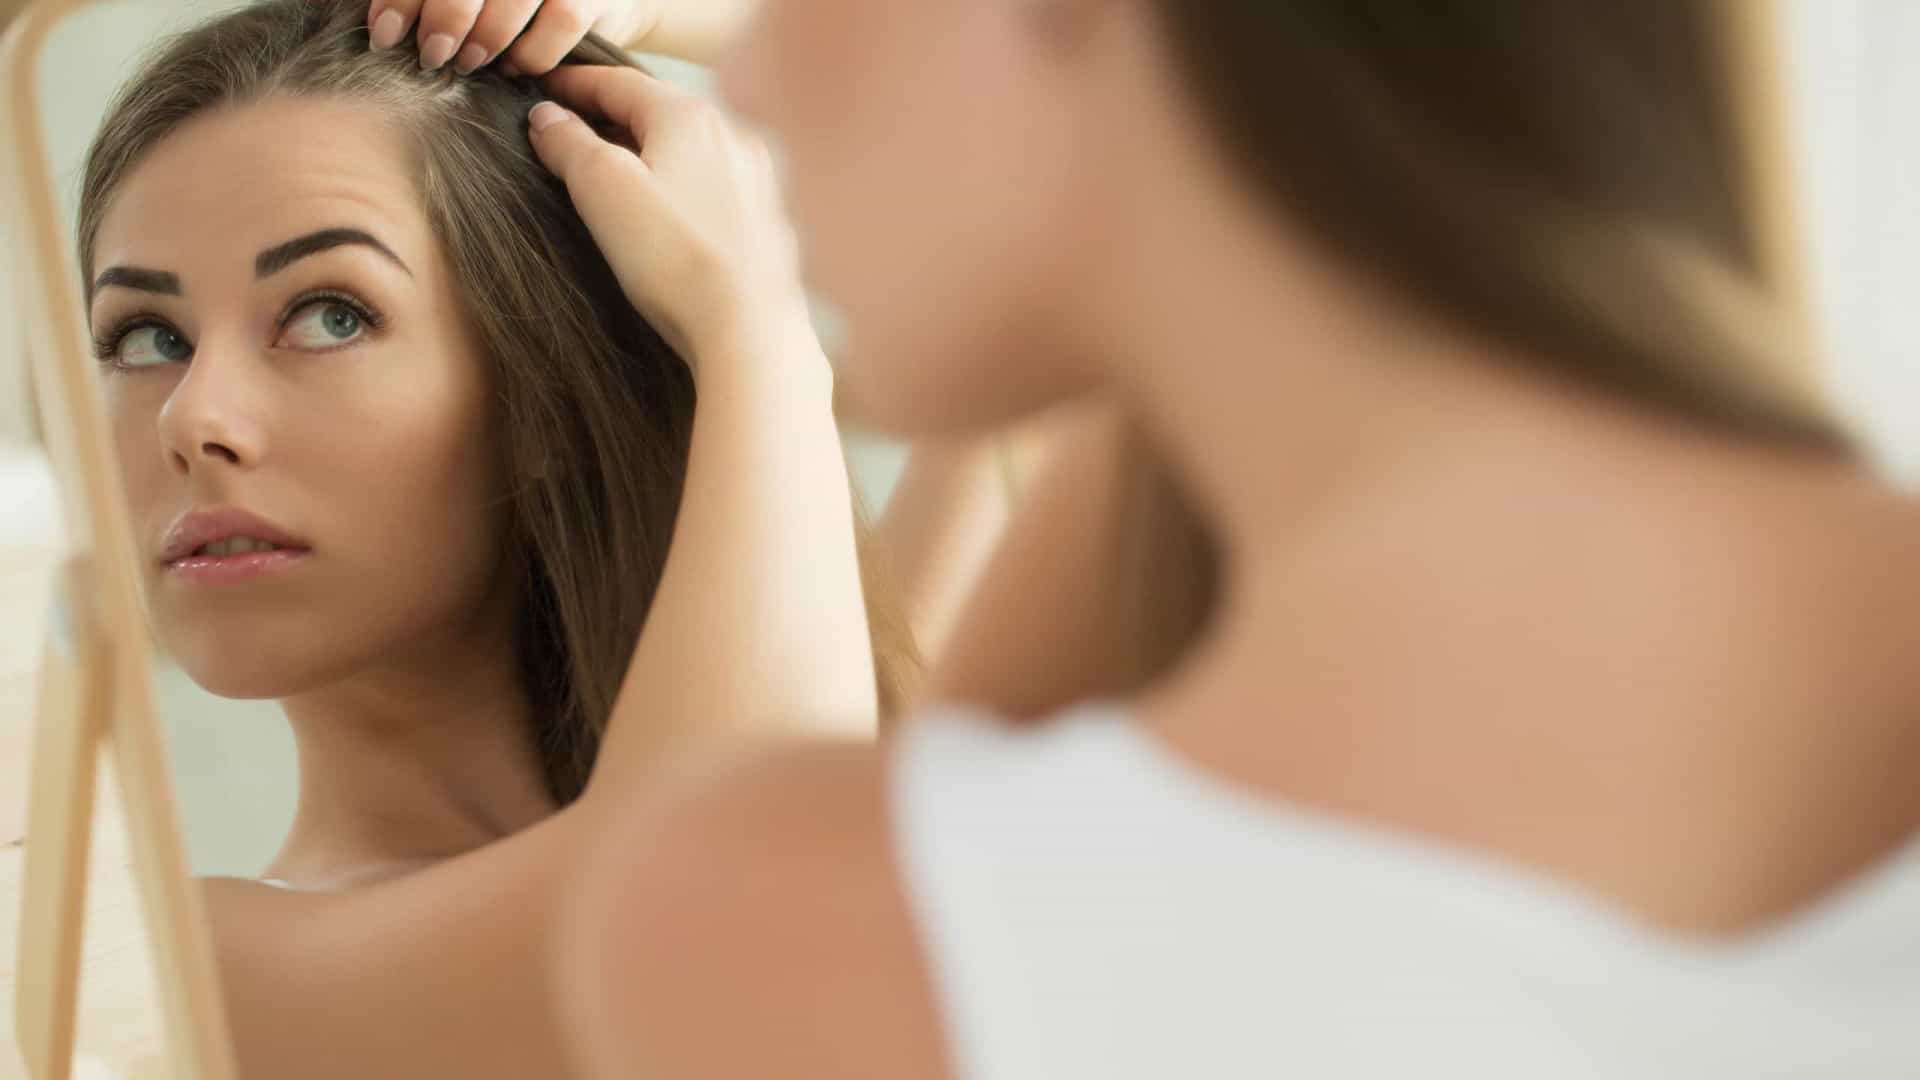 Queratina no cabelo: vantagens e desvantagens deste uso